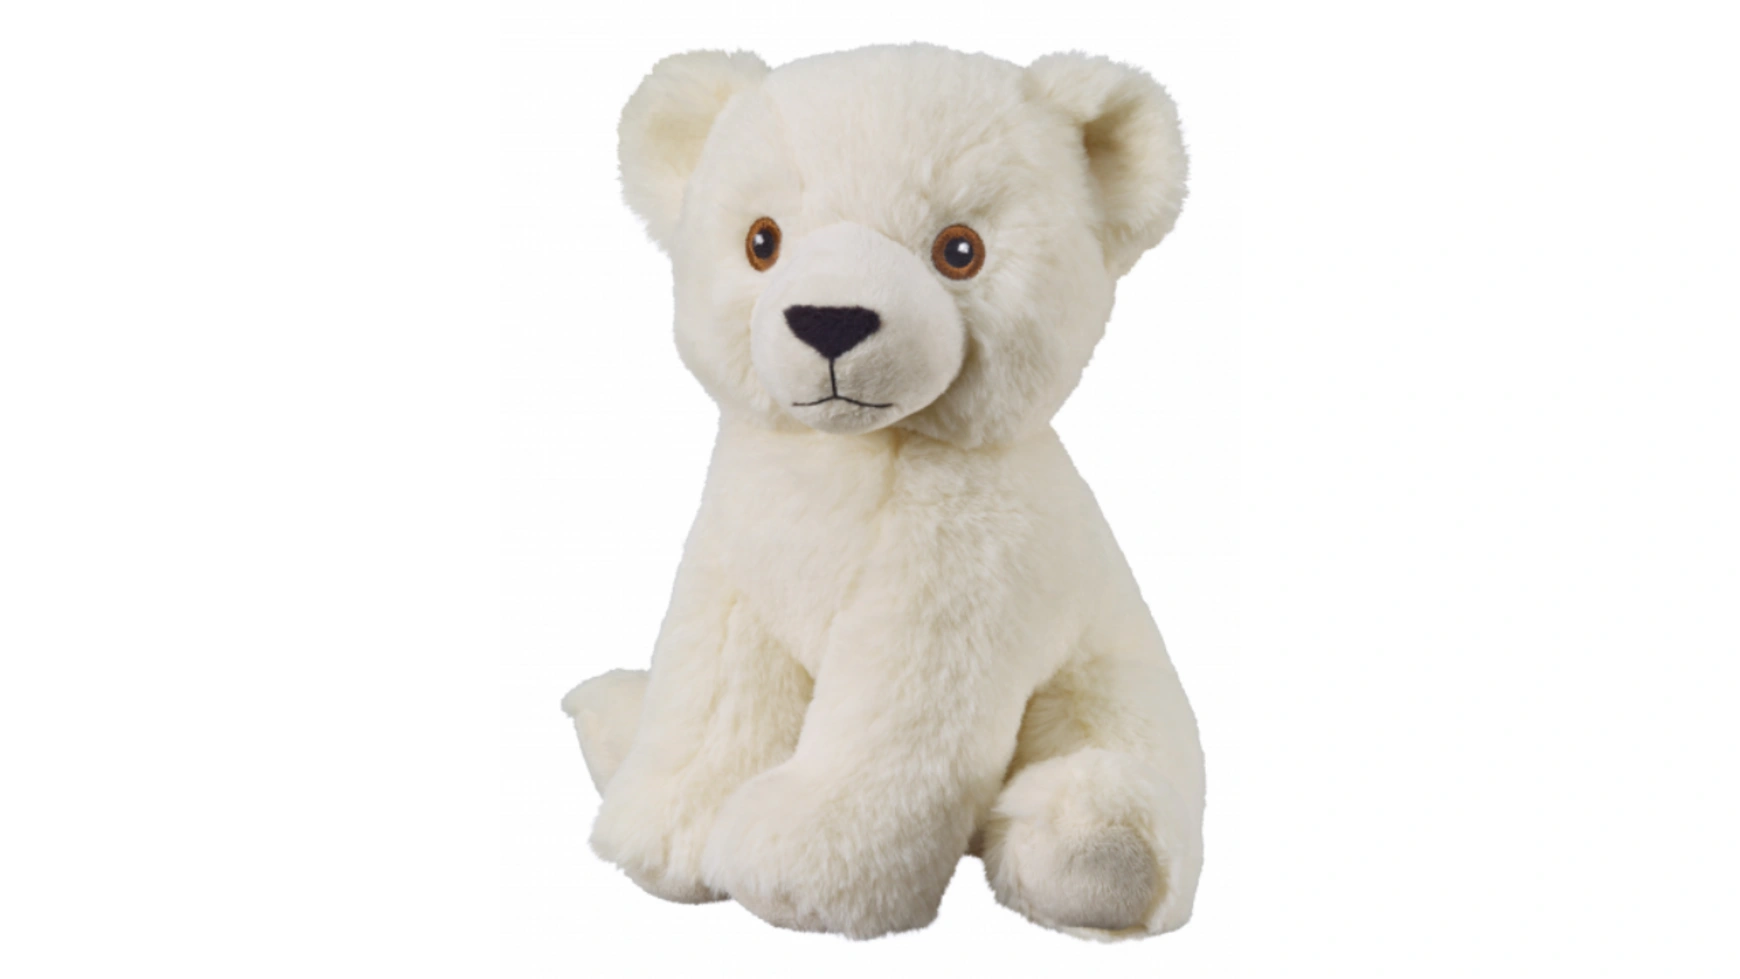 Bauer Eco-Line- I LIKE MY PLANET Сидящий белый медведь 20см любимая игрушка мягкая игрушка медведь тоффи белый 50 см